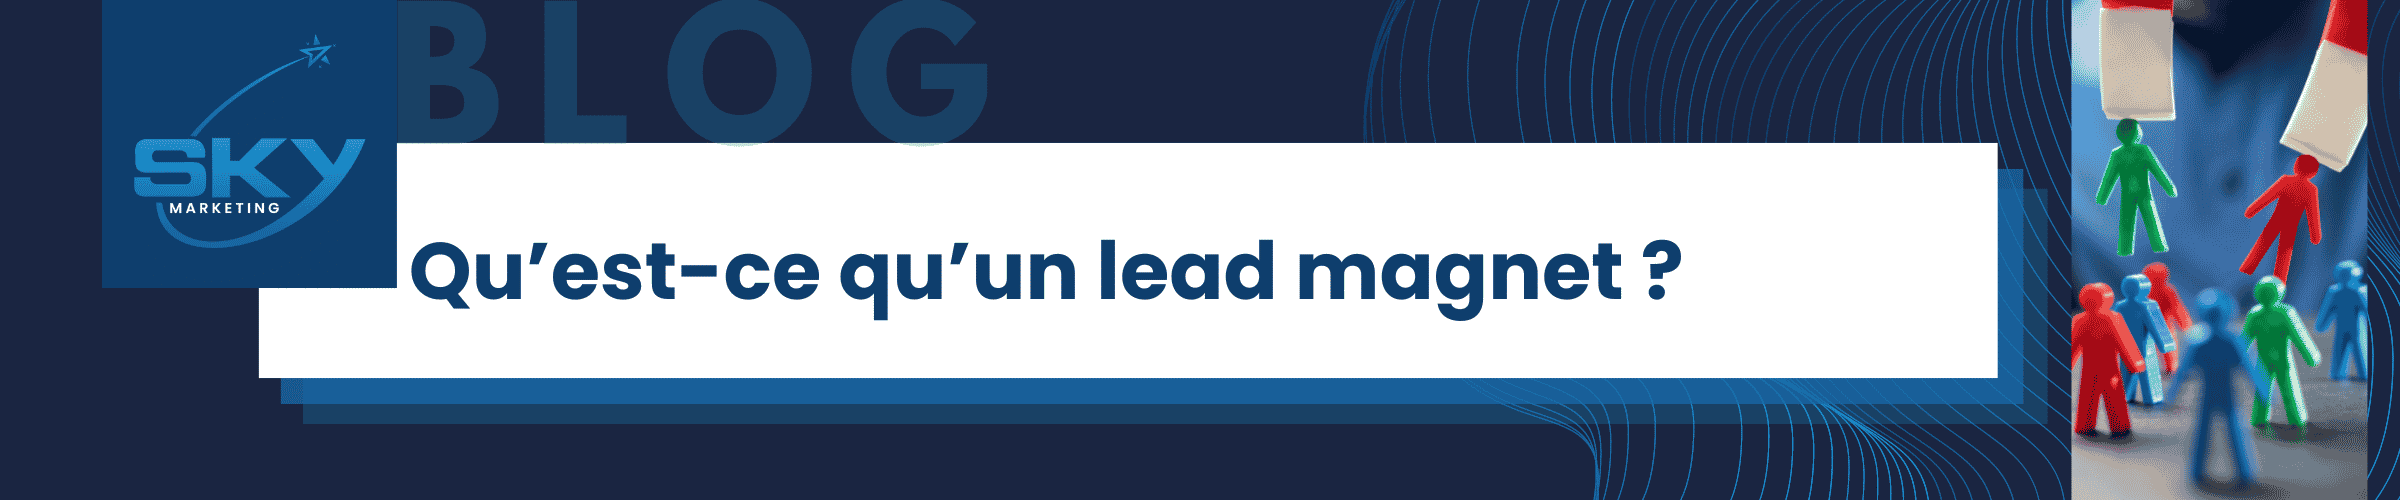 Leads magnets - Générer des leads avec son site web